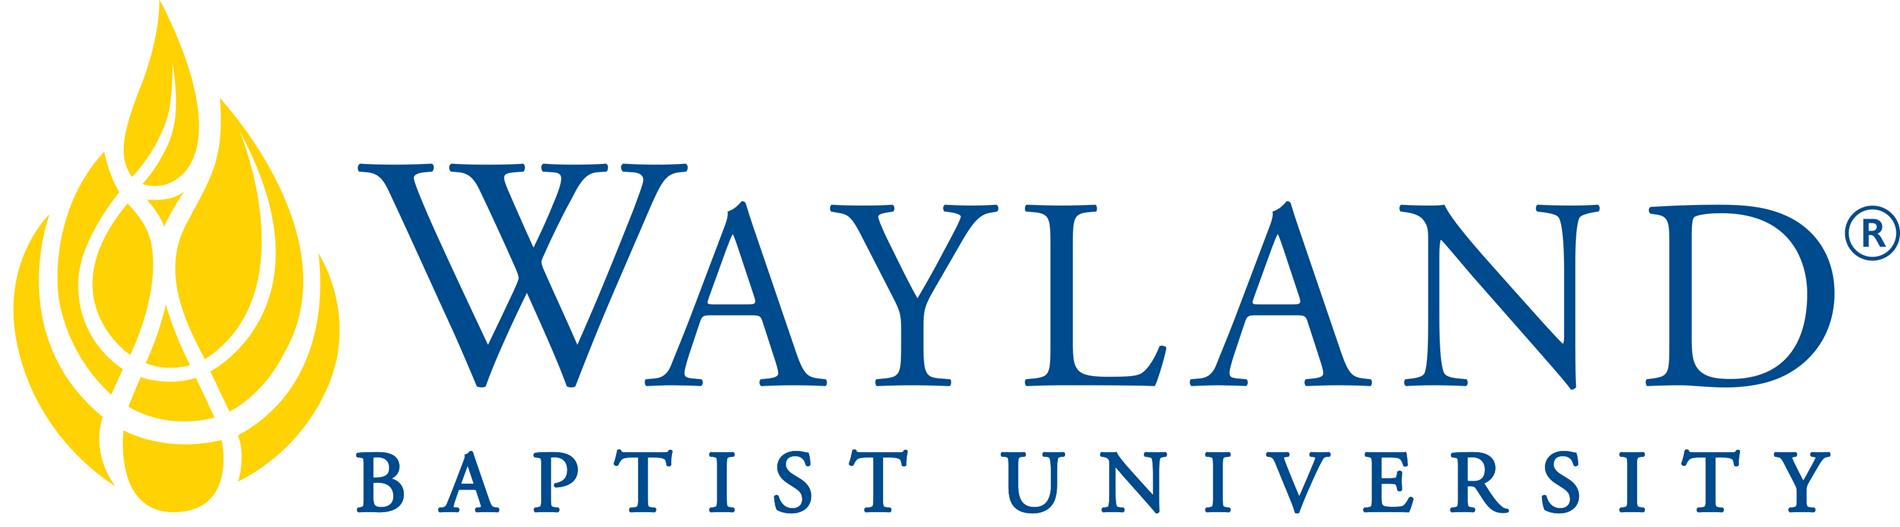 Wayland Logo